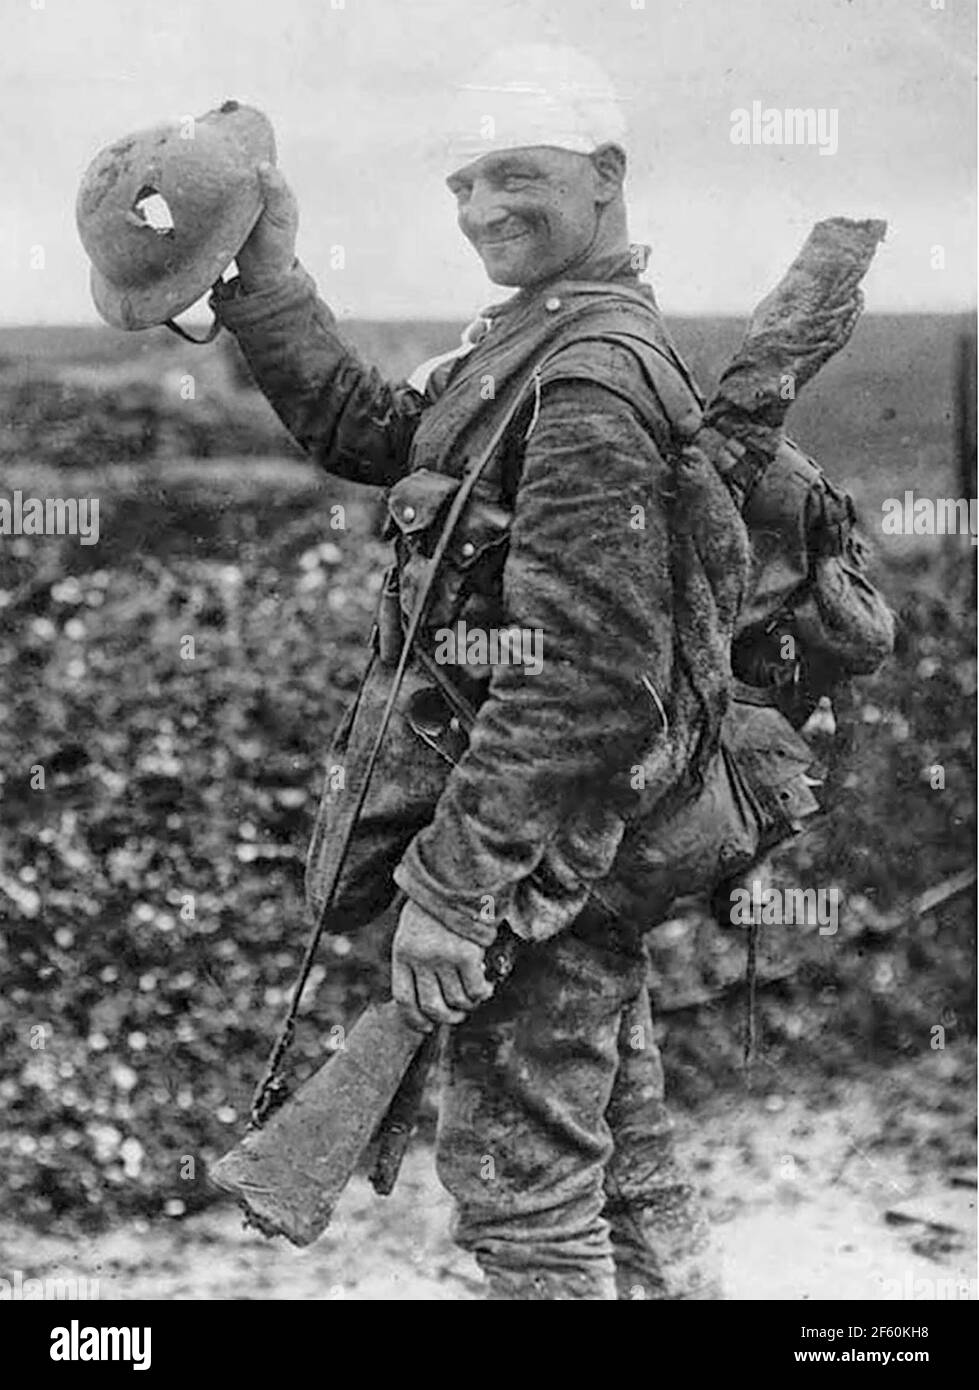 IL SOLDATO BRITANNICO mostra del suo casco danneggiato nel 1917. Non sono state trovate altre informazioni per questa foto iconica. Foto Stock